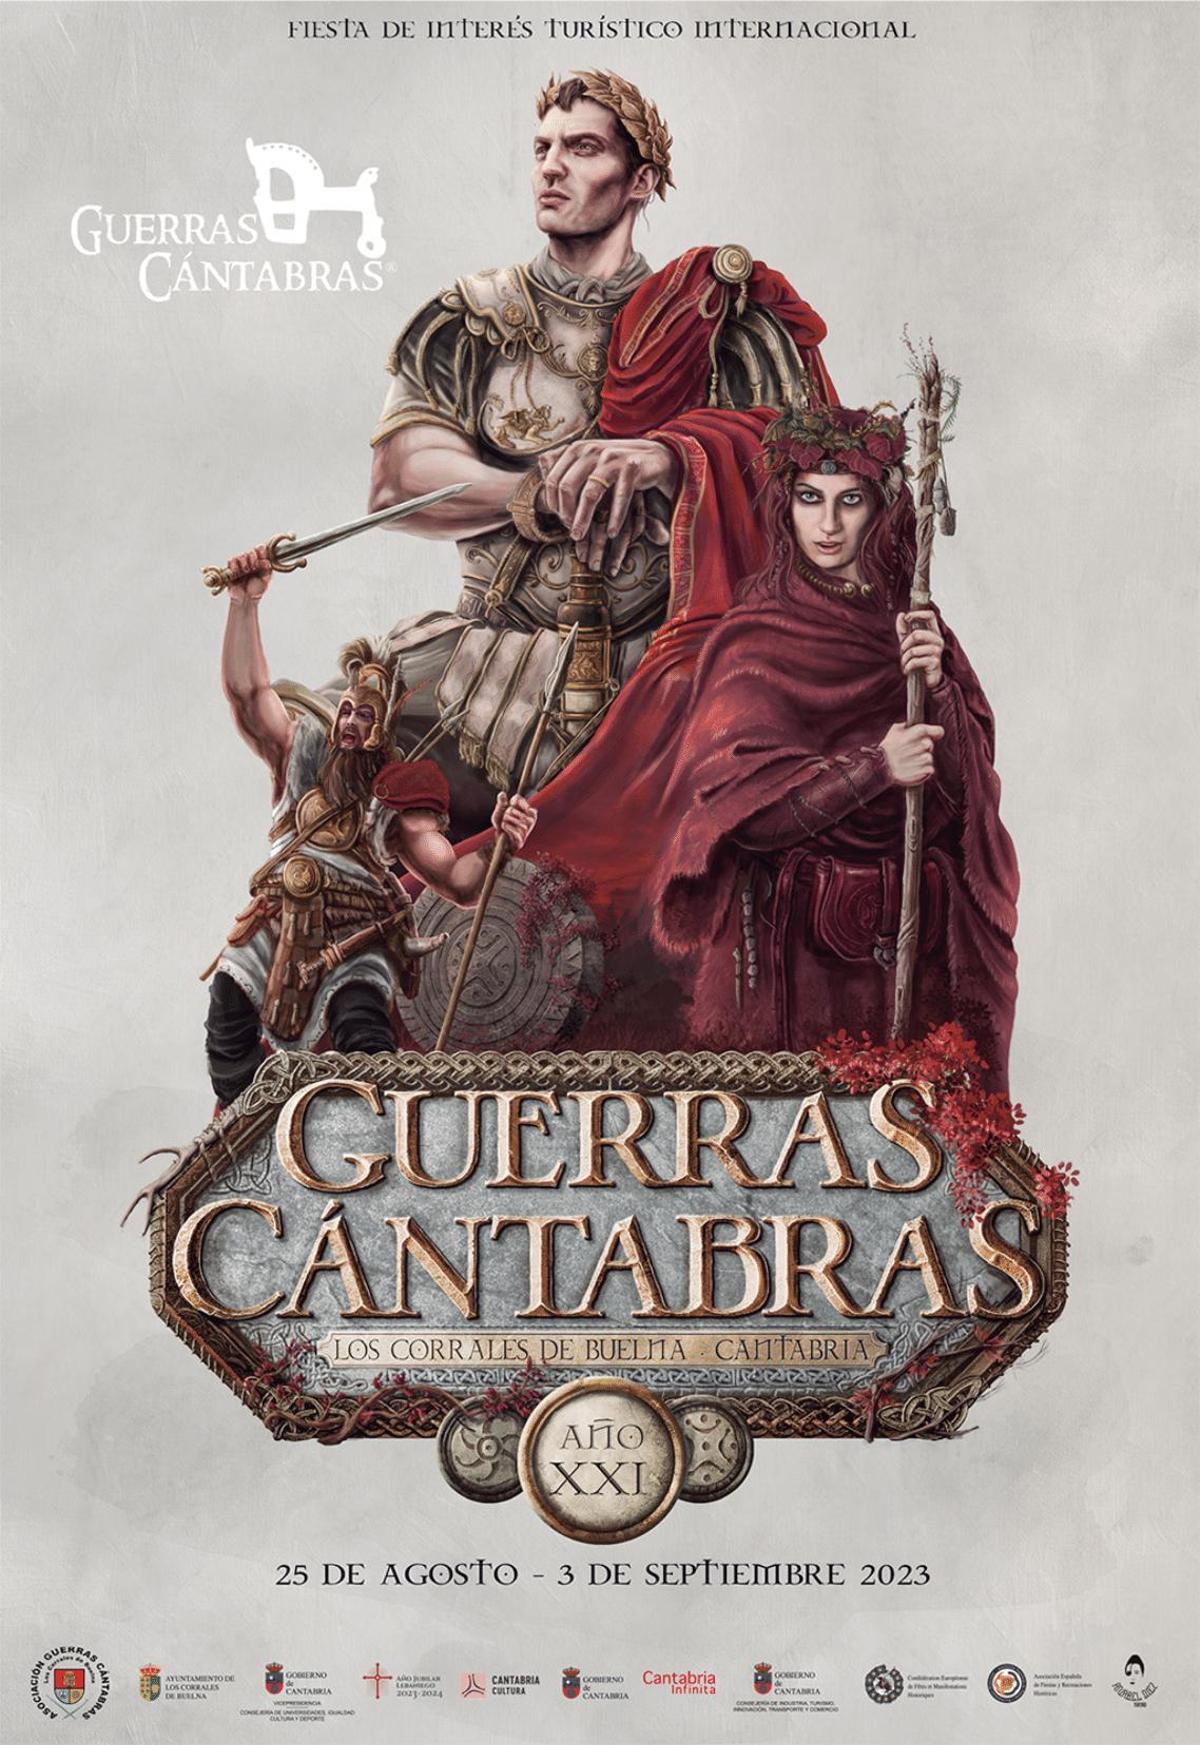 Guerras Cántabras se celebra del 25 de agosto al 3 de septiembre en Los Corrales de Buelna.